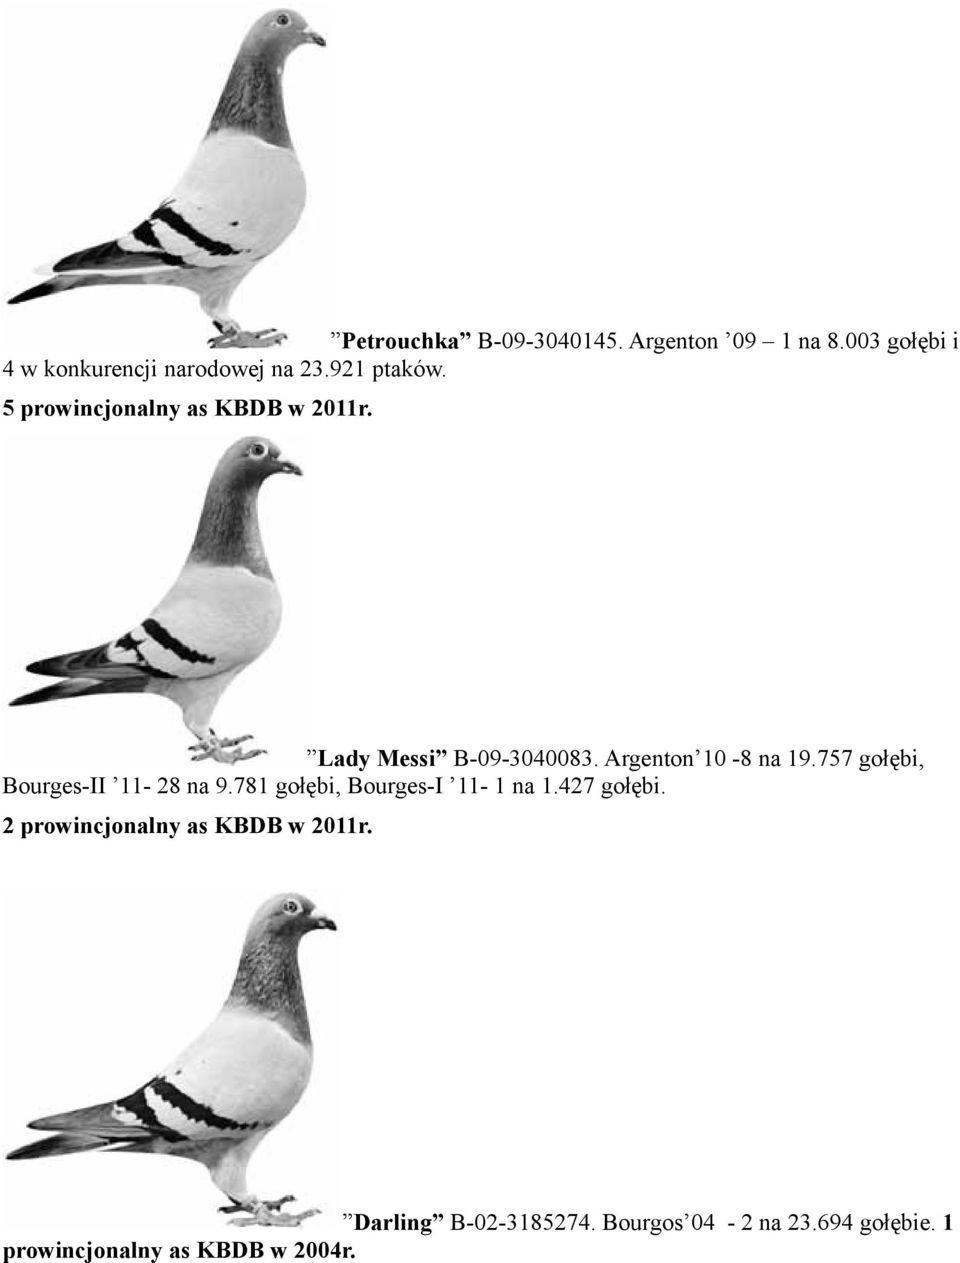 757 gołębi, Bourges-II 11-28 na 9.781 gołębi, Bourges-I 11-1 na 1.427 gołębi.